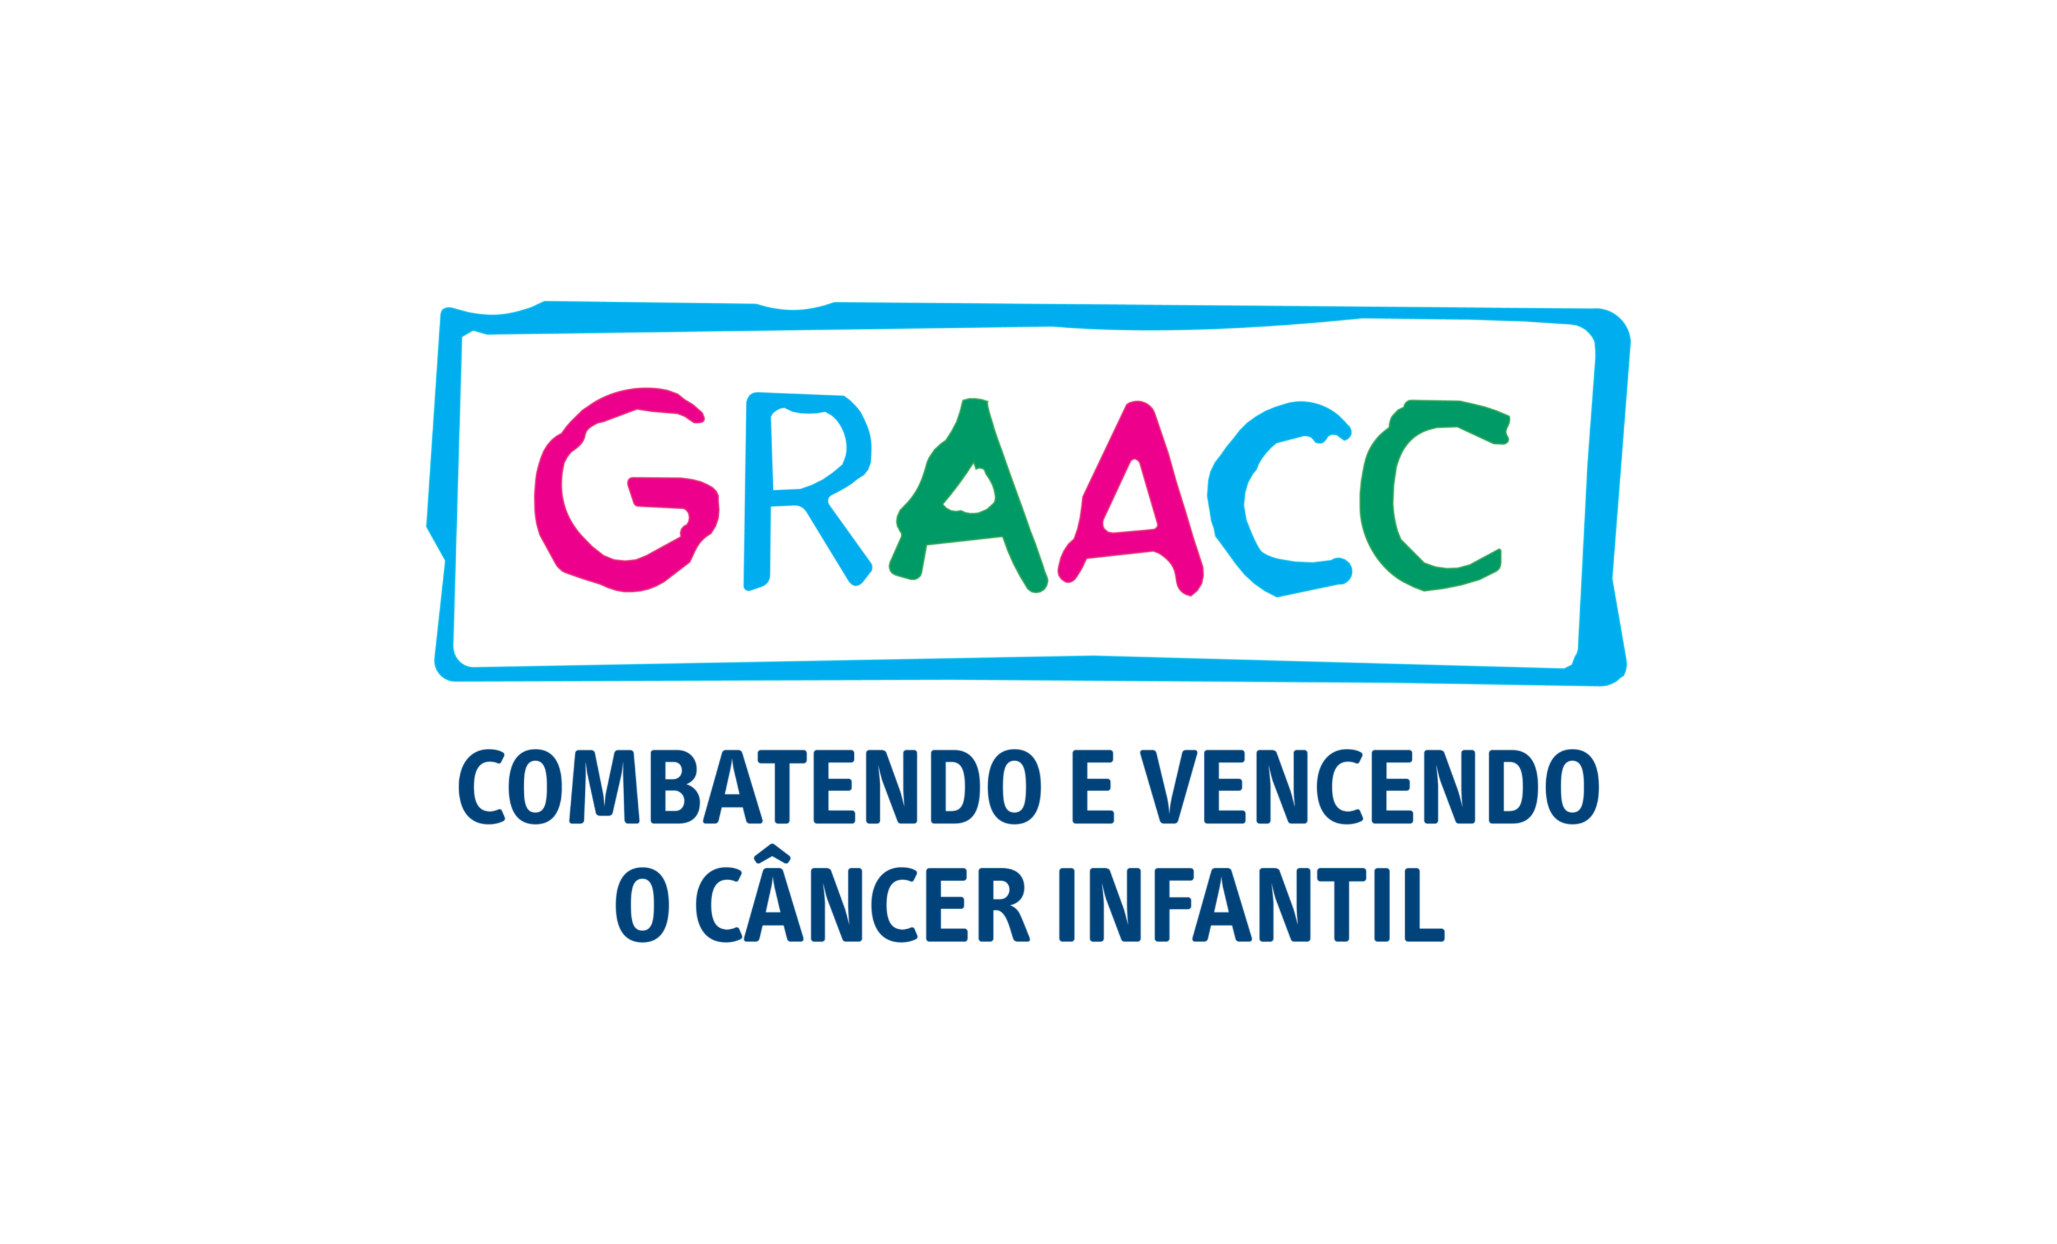 Logo graacc final 02